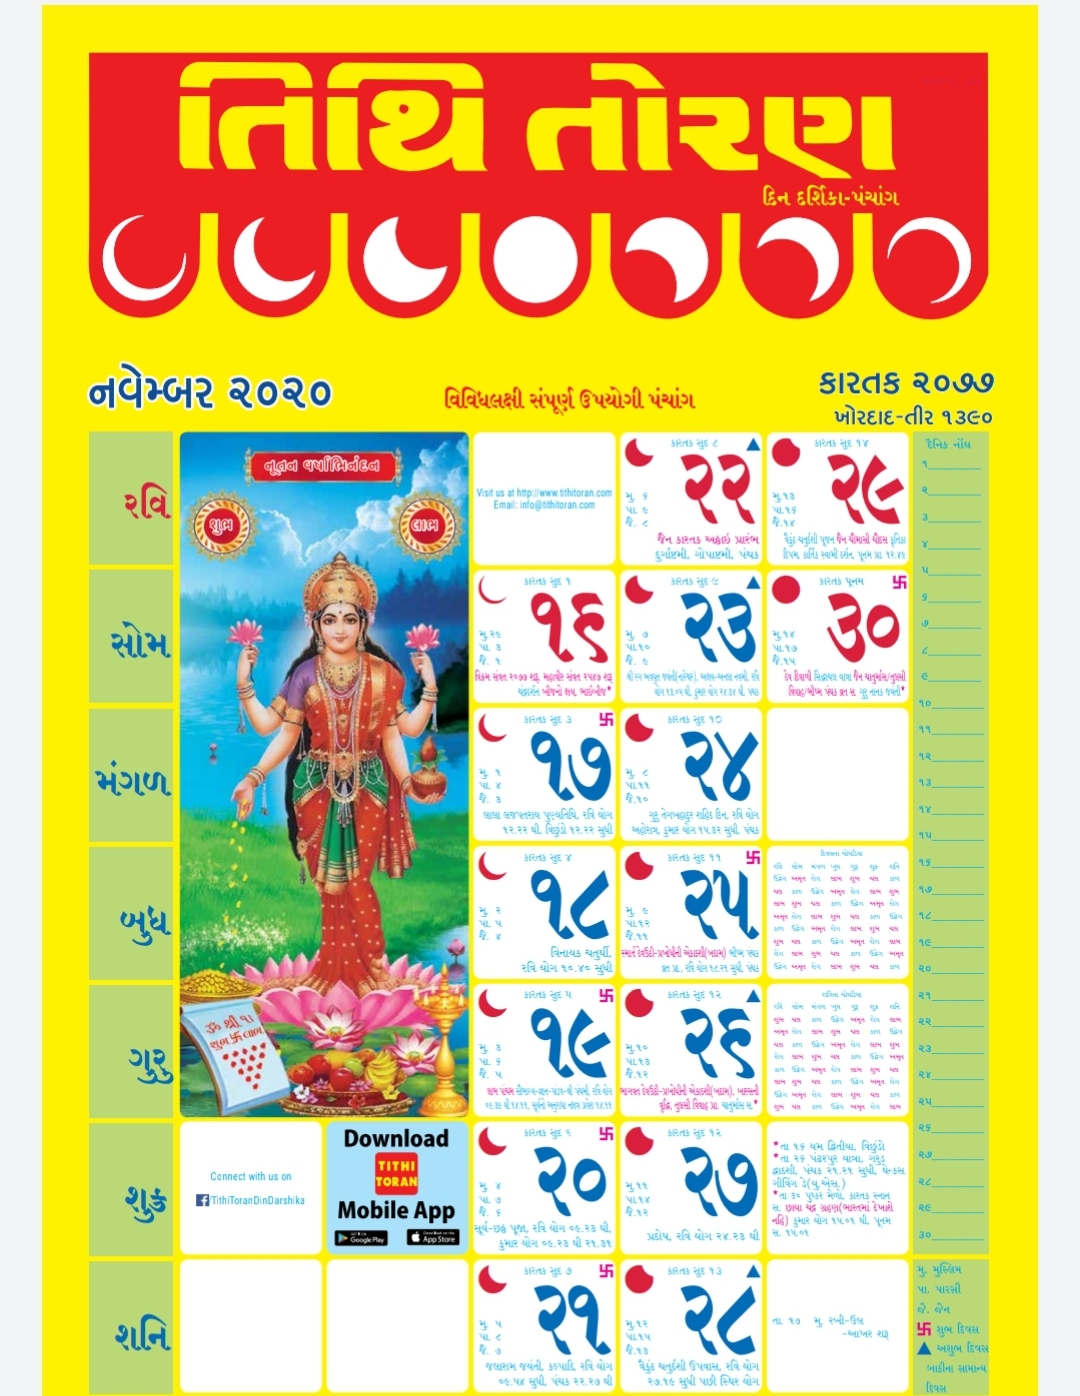 full-gujarati-calendar-panchang-of-the-year-2020-21-happy-to-help-tech